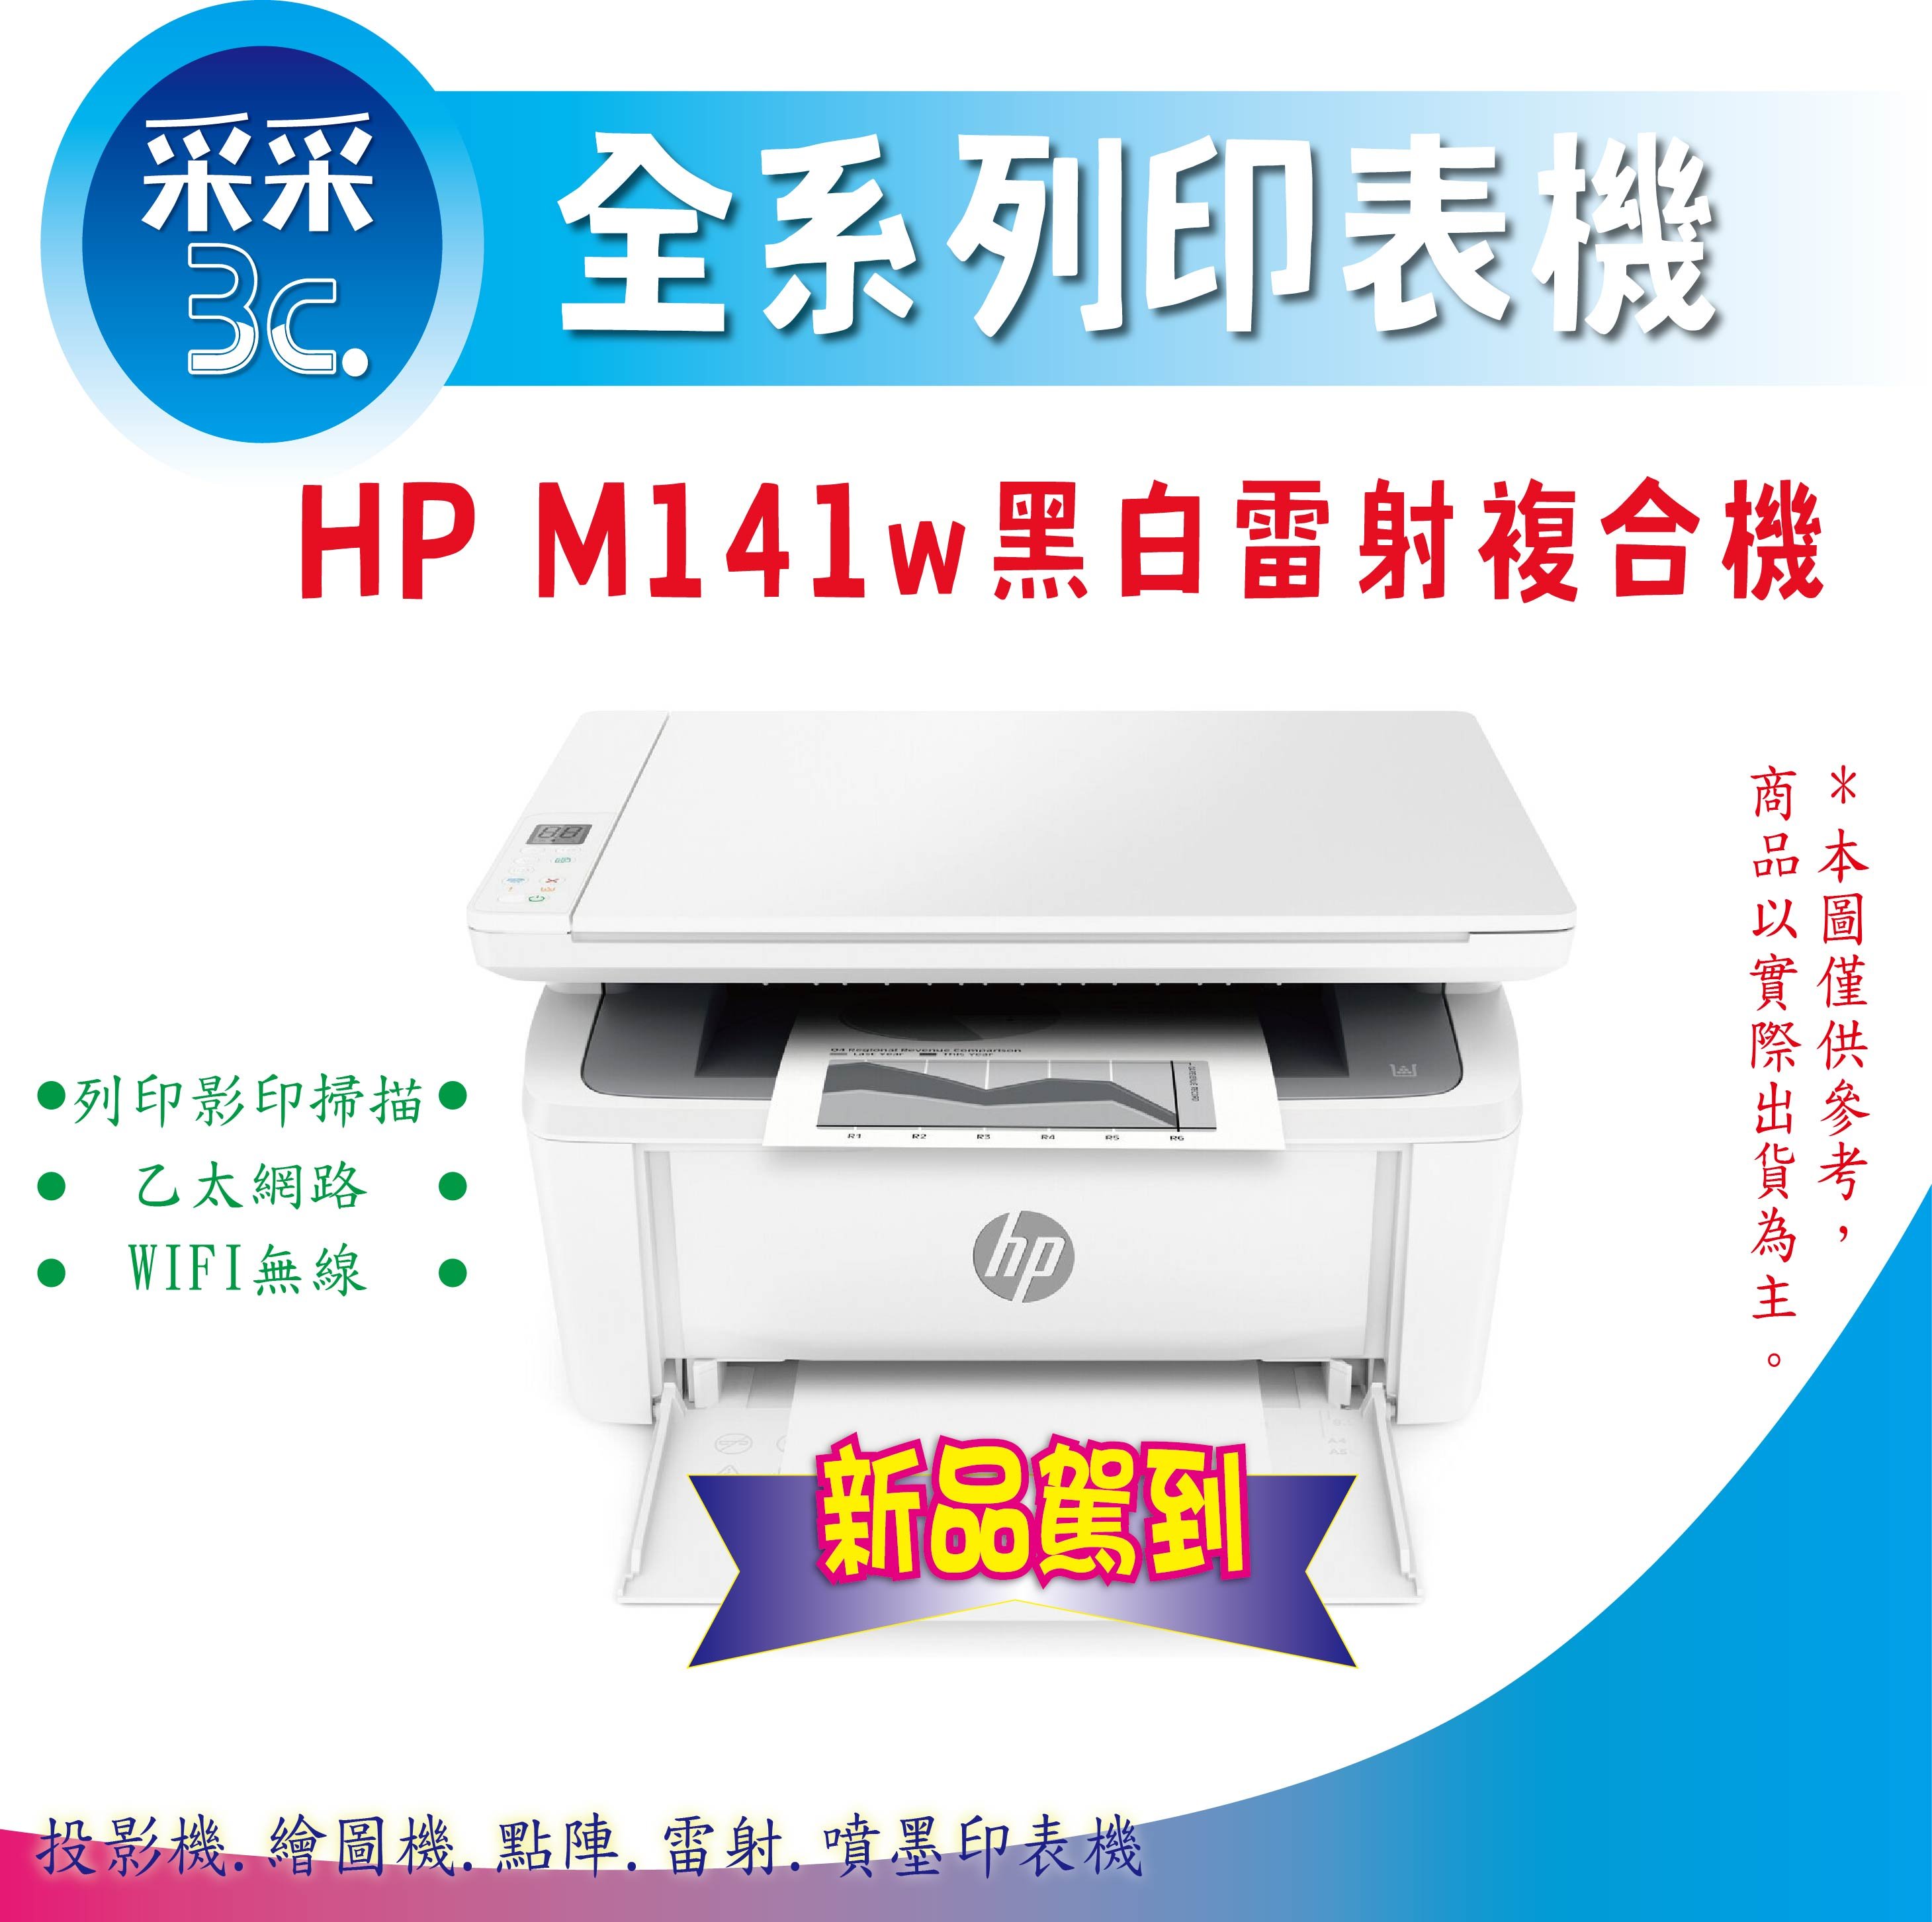 【獨家延長保固+送咖啡券】HP Laserjet M141w / M141 黑白雷射事務機 列印/影印/掃描/WIFI